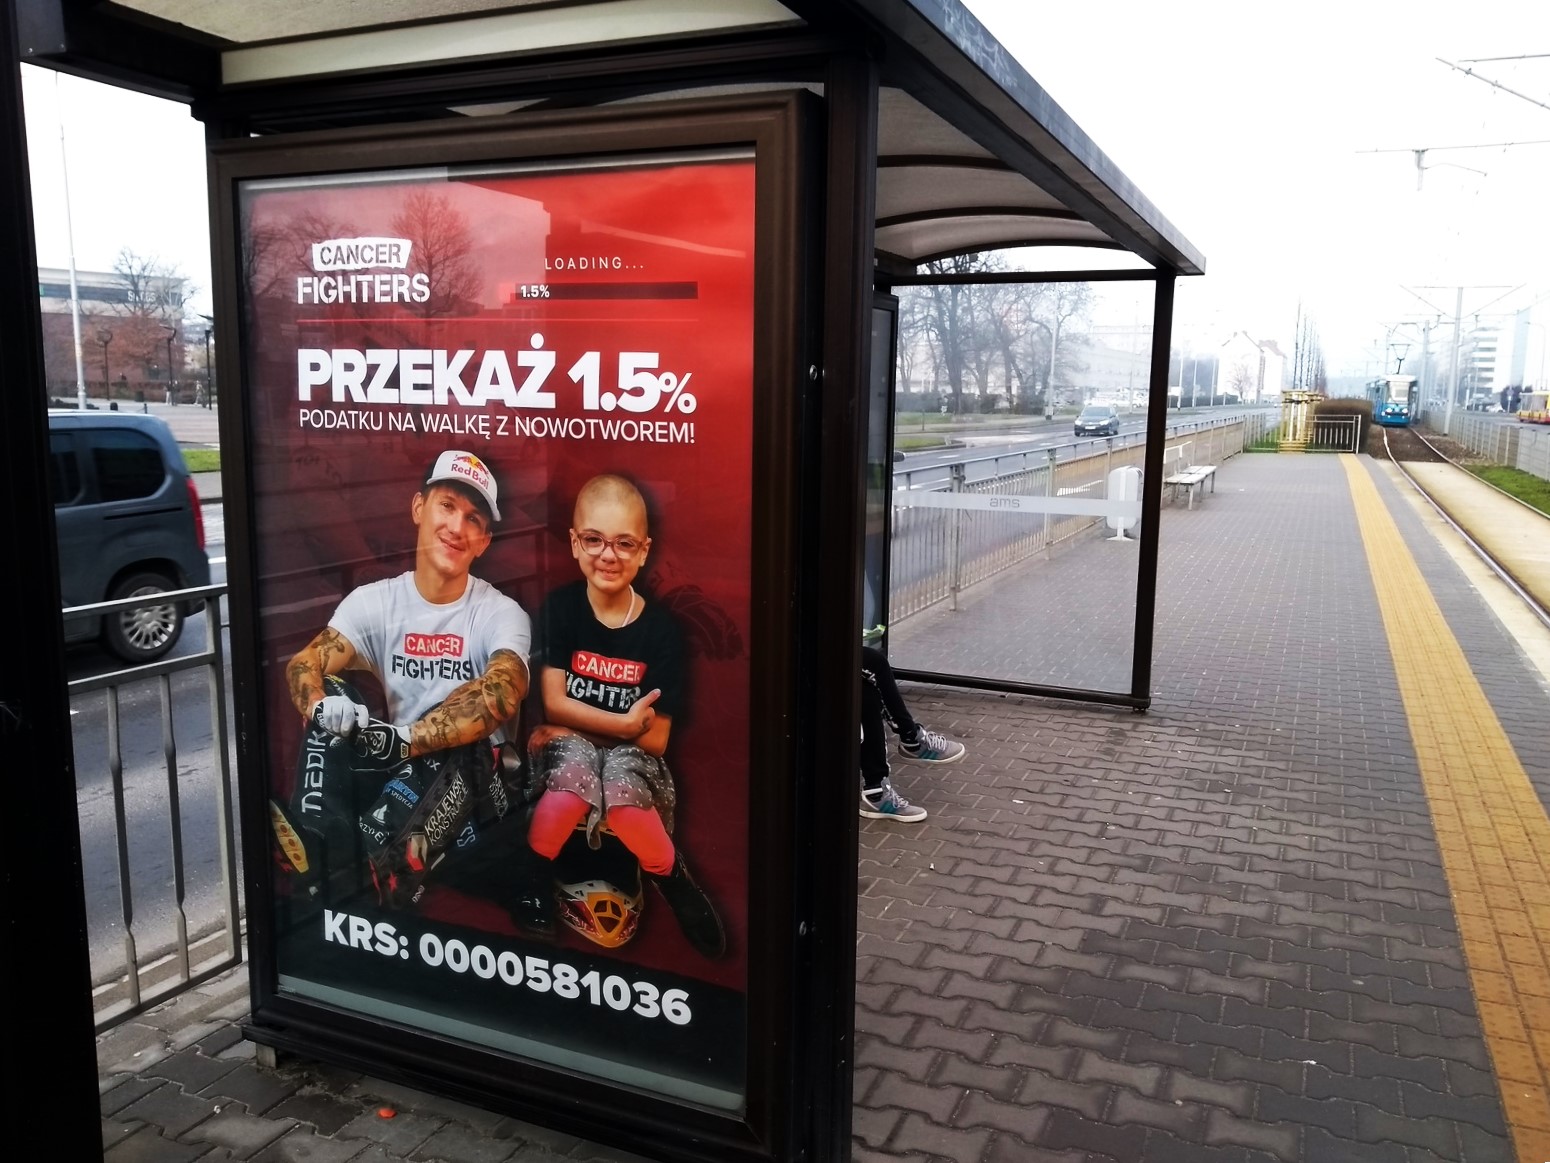 Marzec w kampaniach outdoorowych ZnajdźReklamę.pl